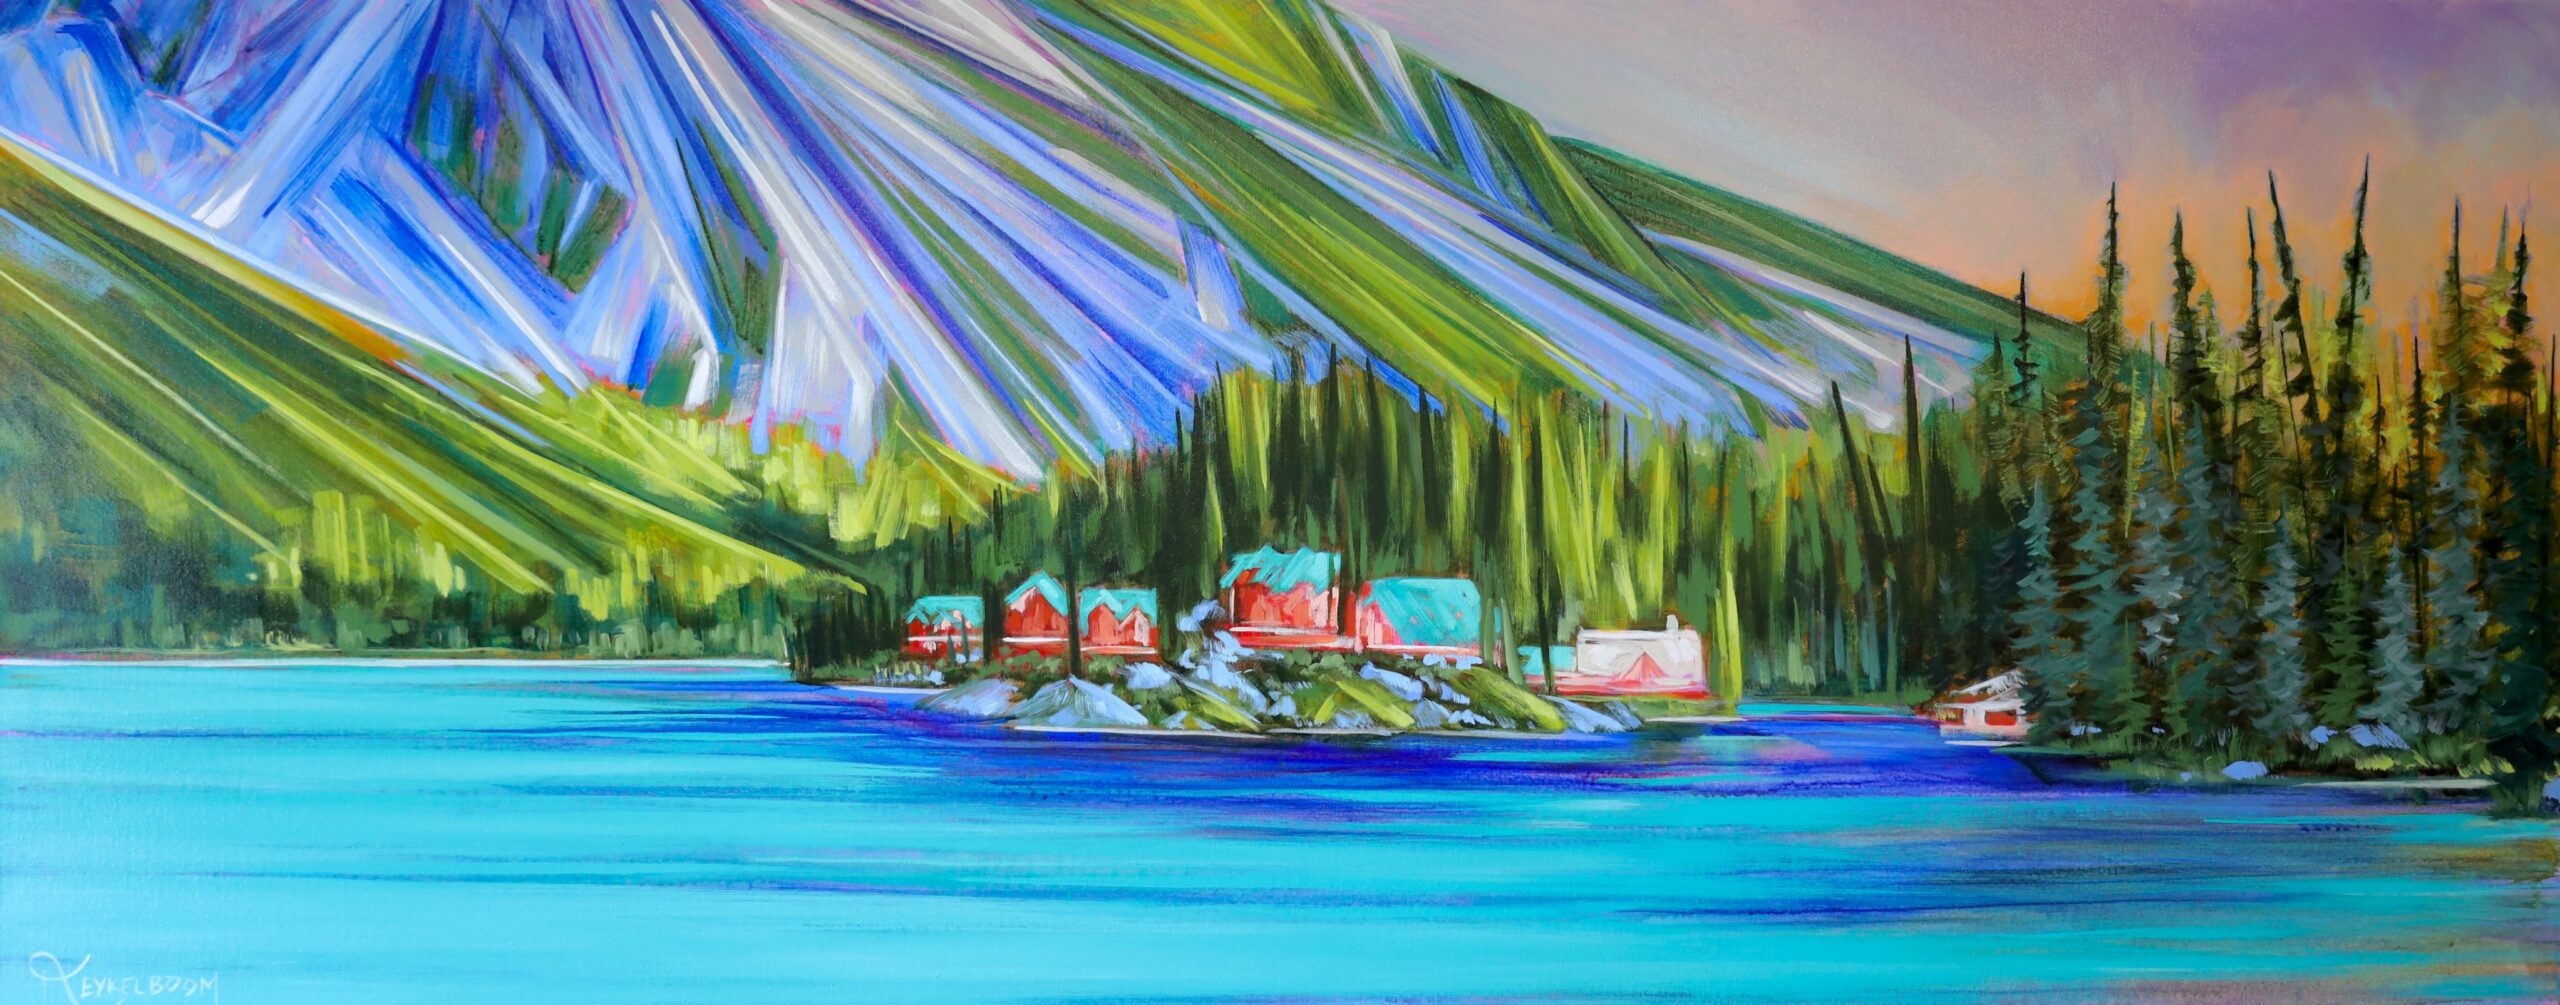 Little Mountain Gem (Emerald Lake) by Kayla Eykelboom, 24